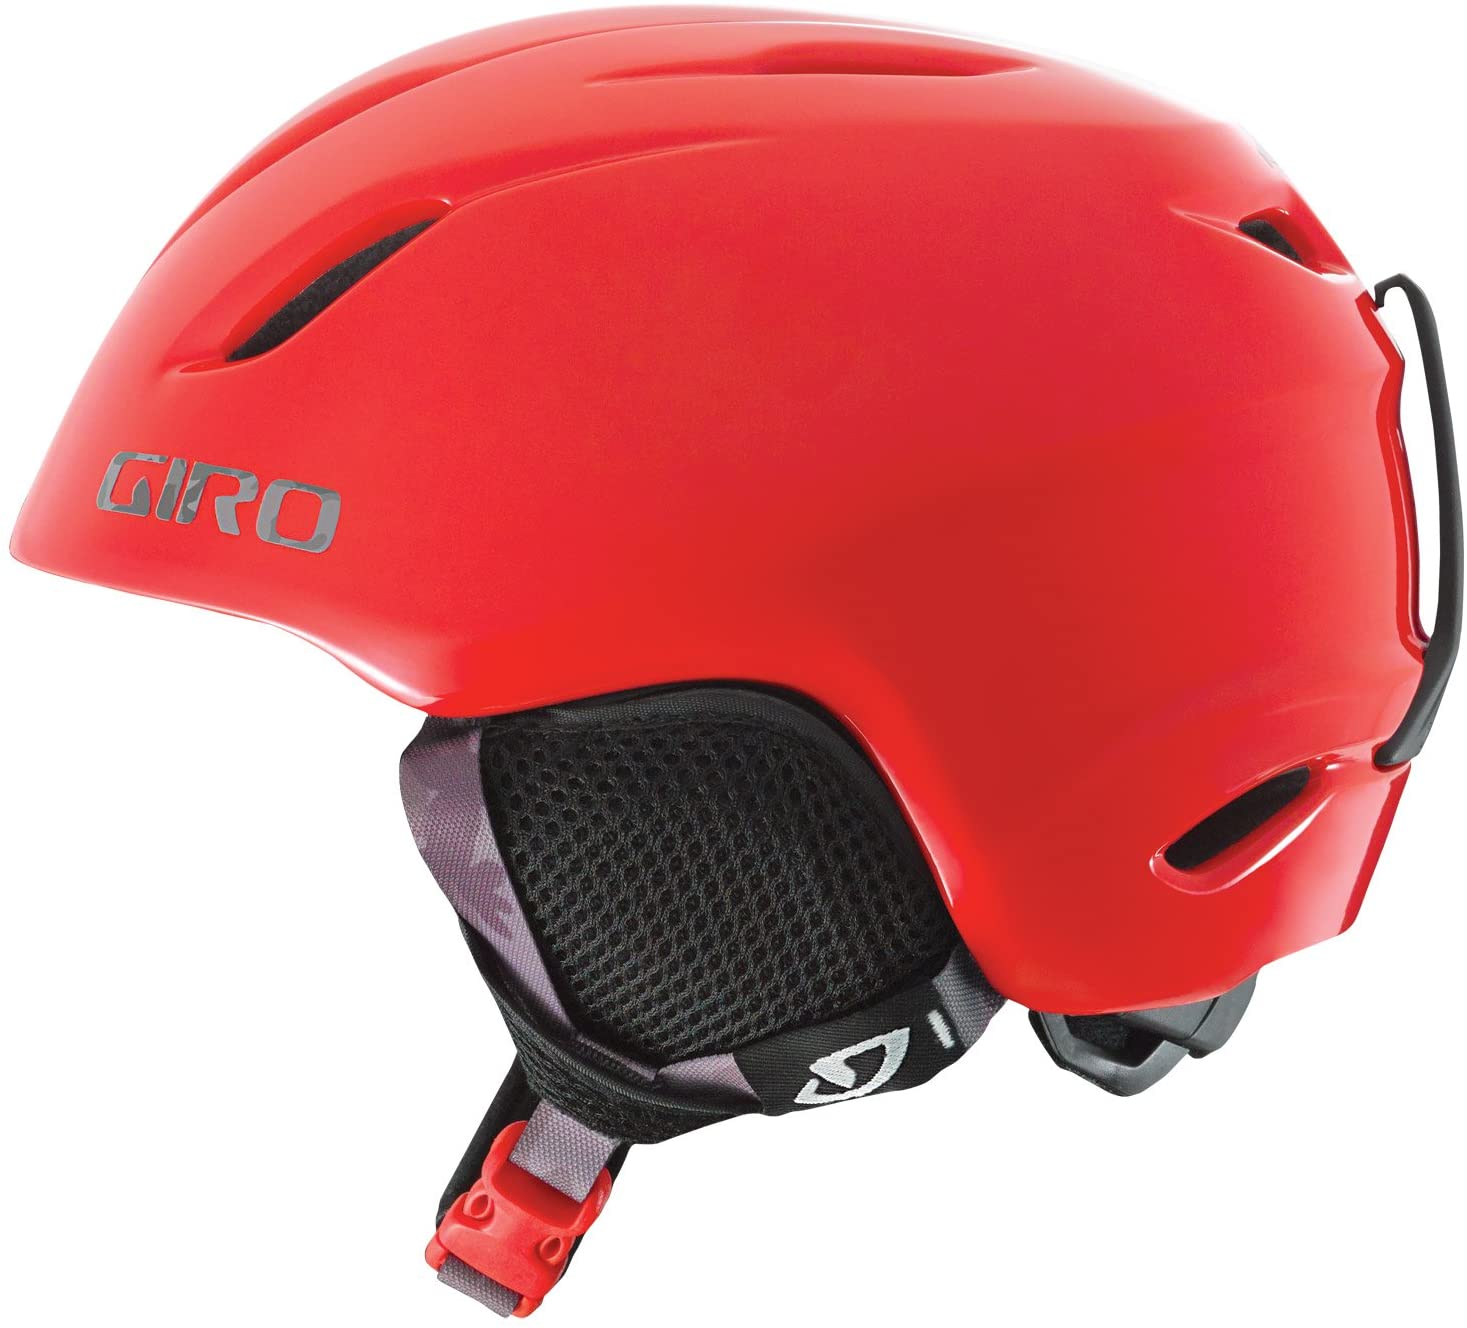 Giro Launch Childrens Snowboard Ski Helmet